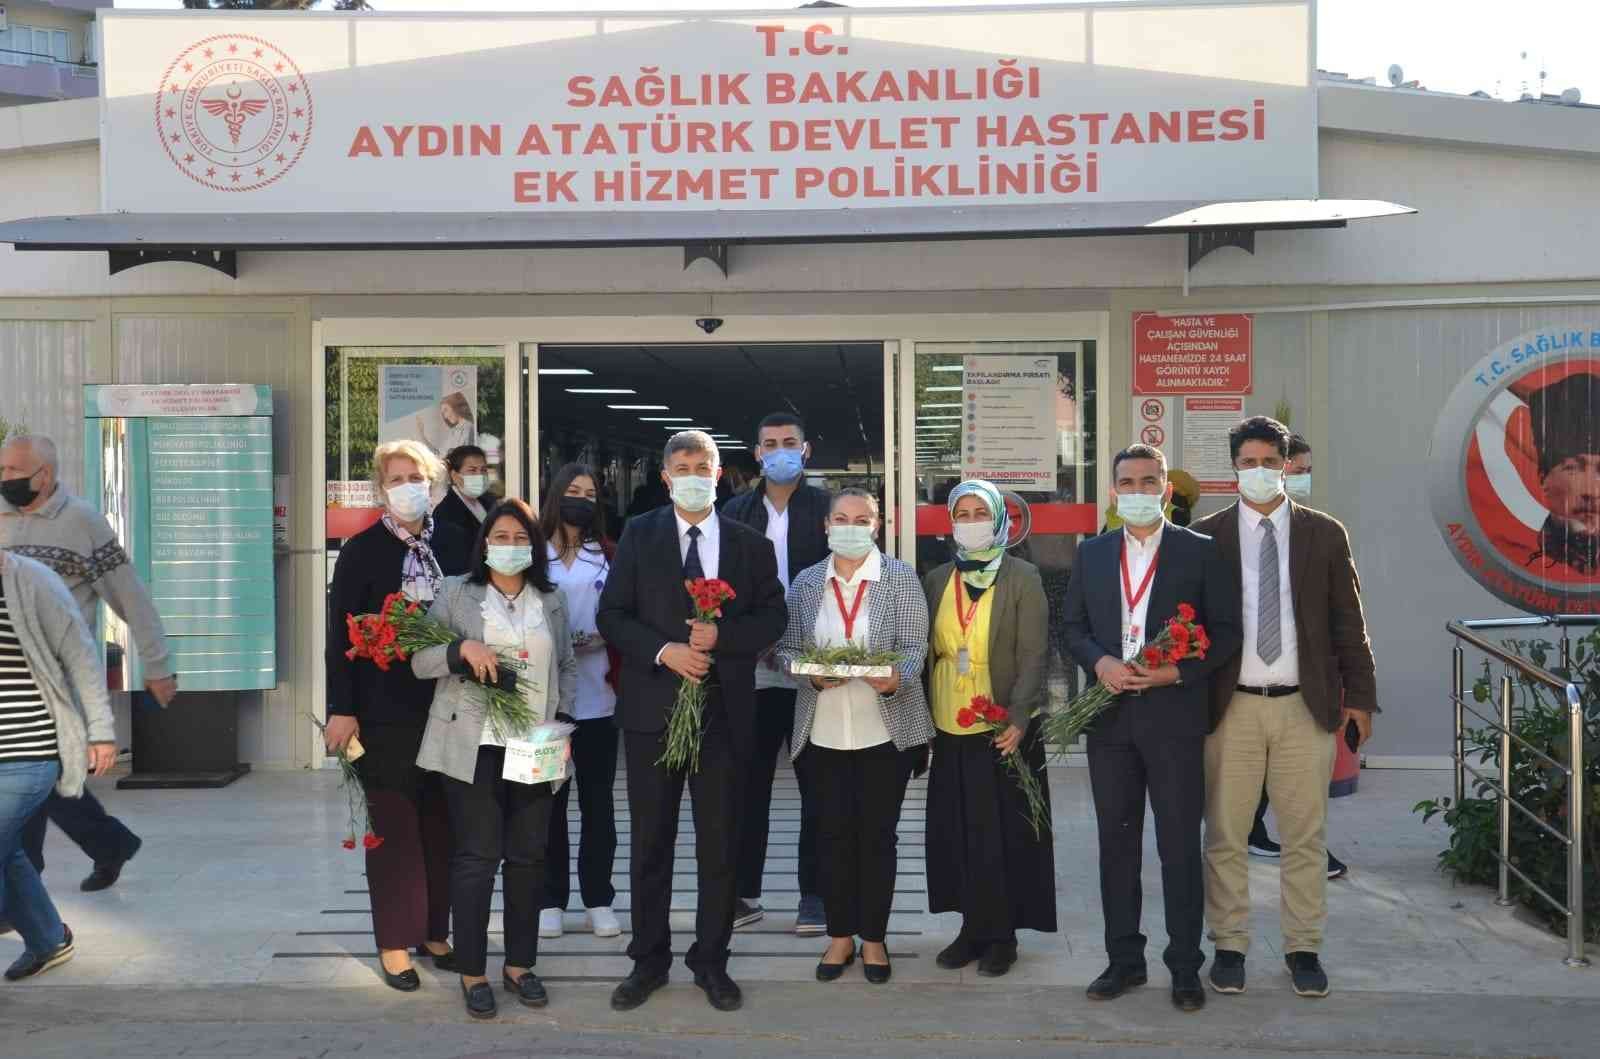 Atatürk Devlet Hastanesi’nde, hasta hakları konusunda bilgilendirmede bulunuldu #aydin